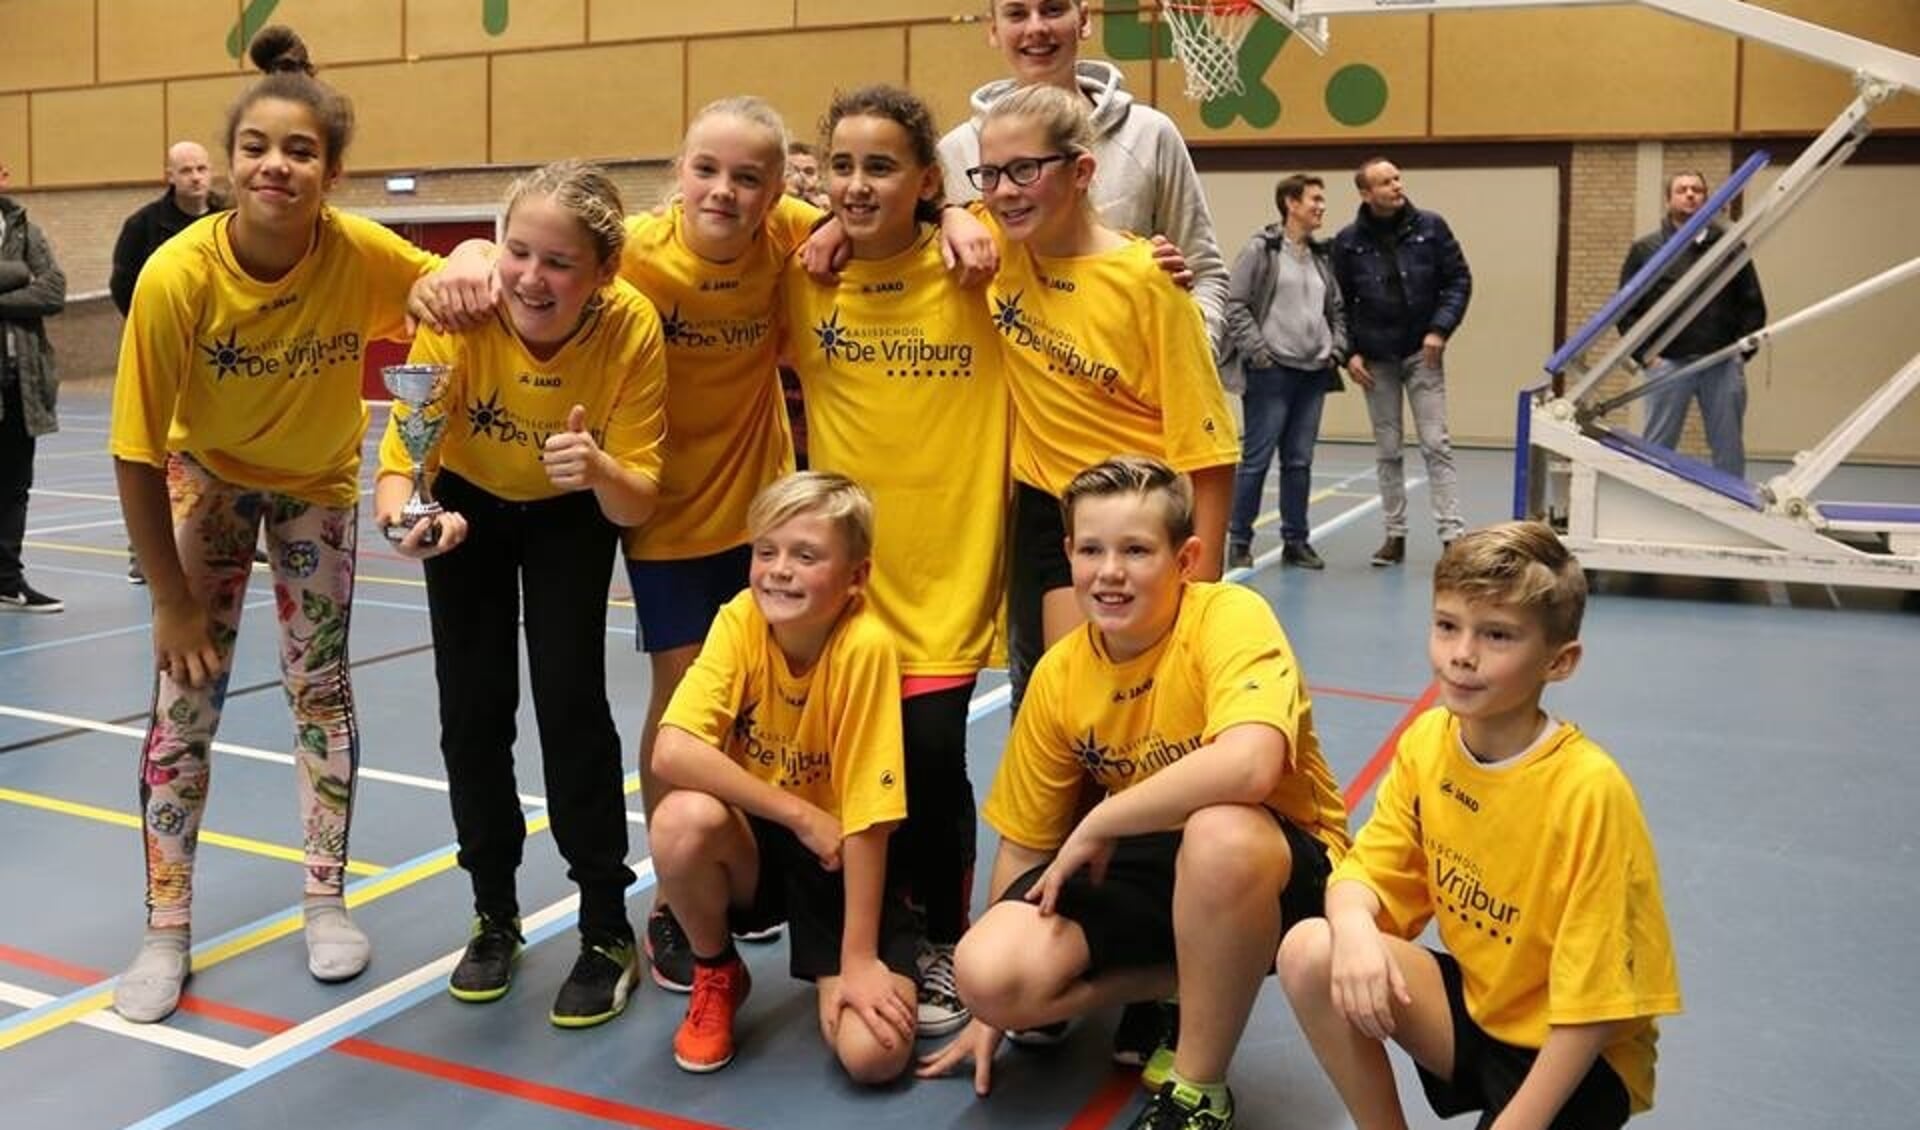 De winnaars: het dreamteam van De Vrijburg